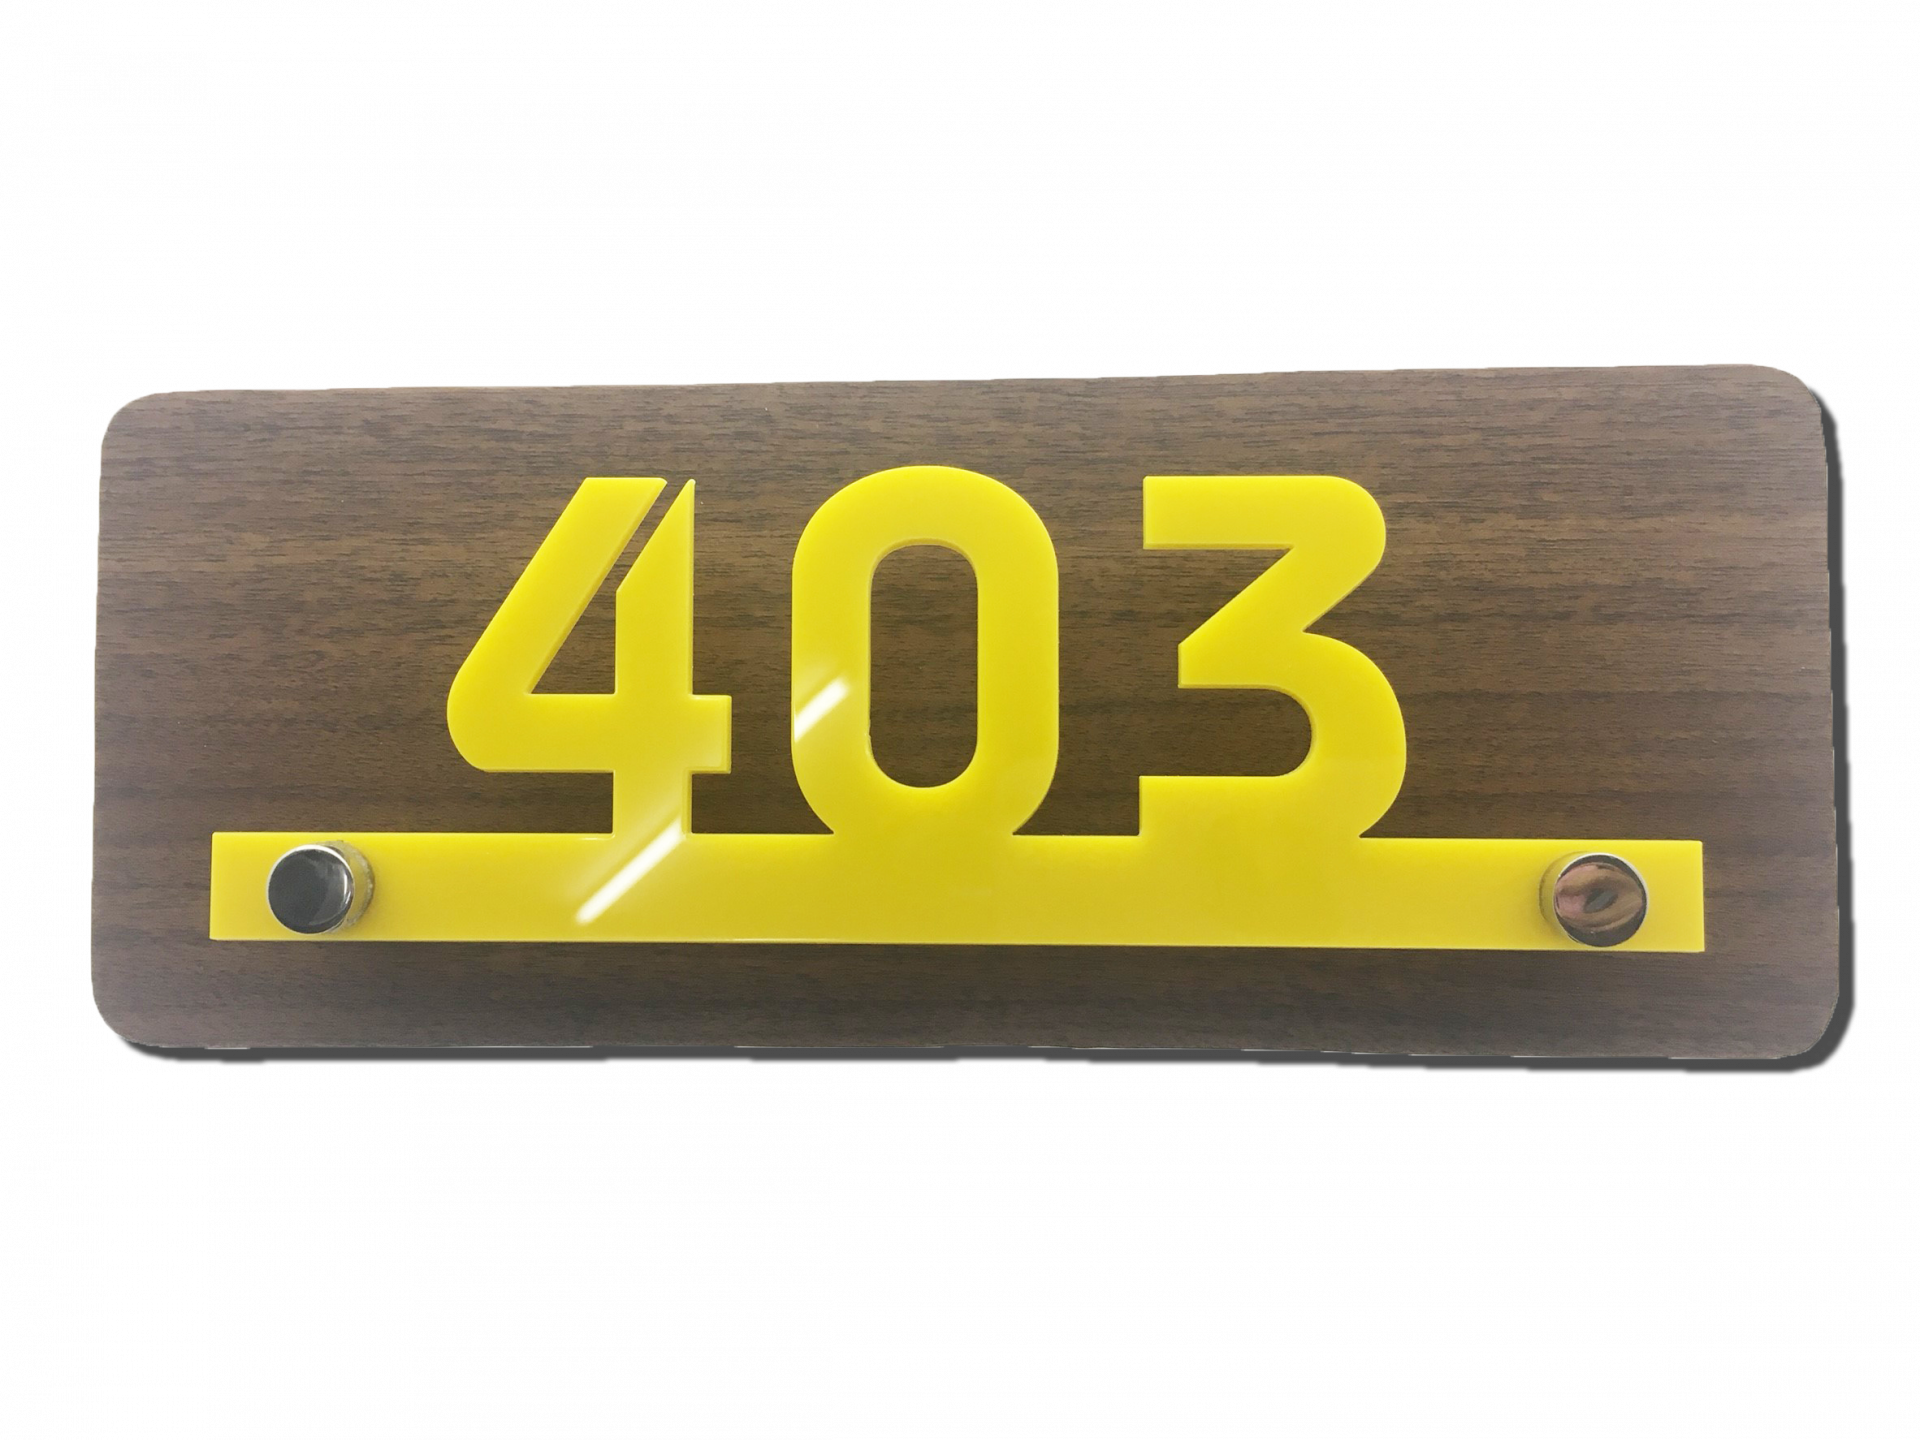 Room Number